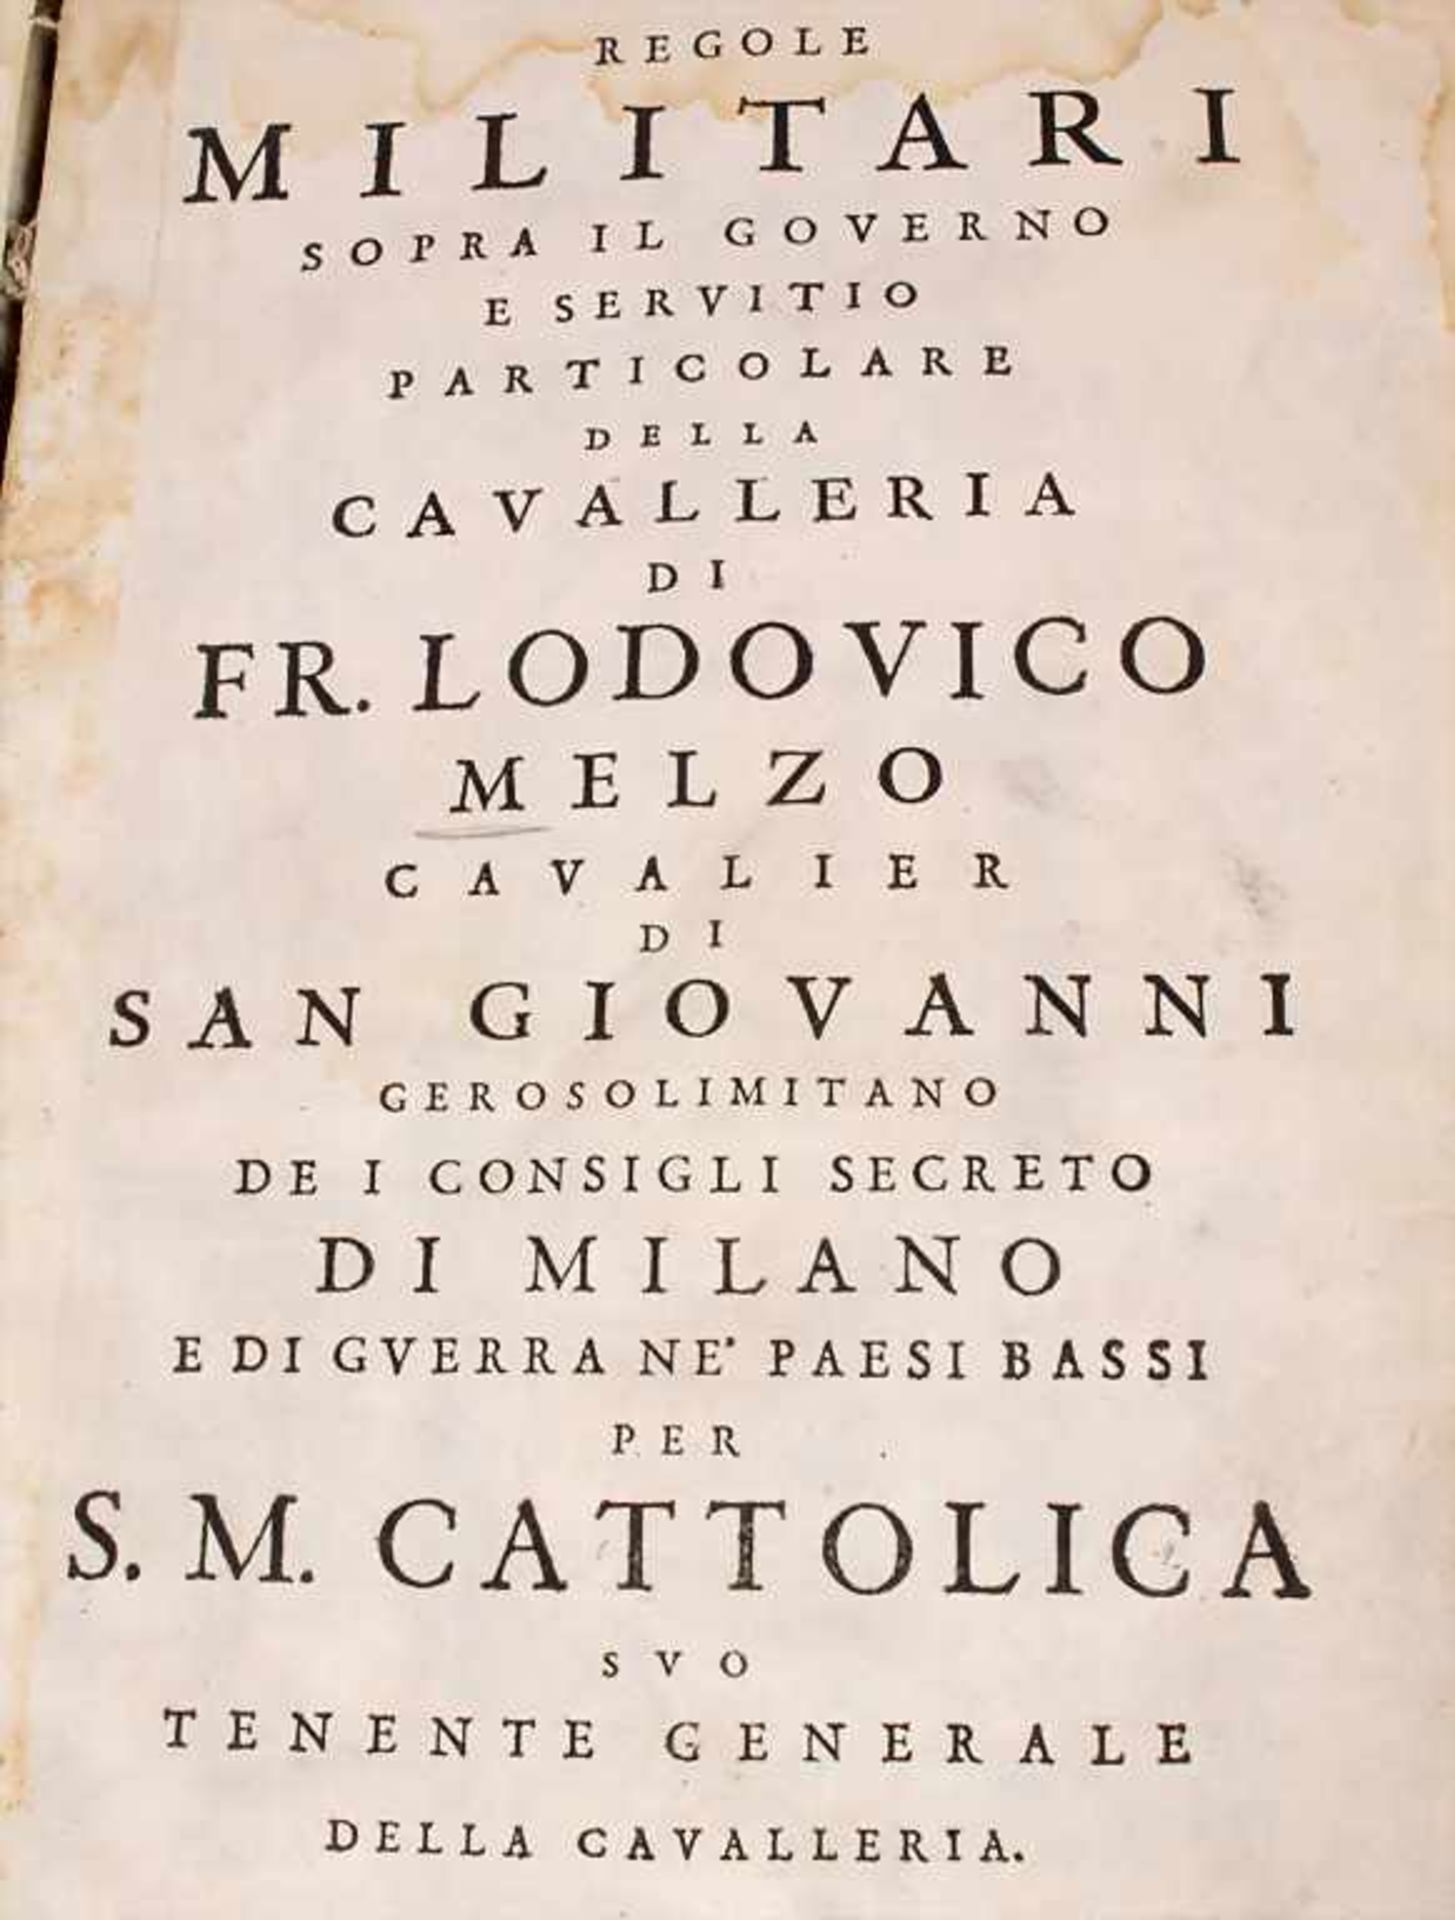 Fr. Lodovico Melzo, 'Regole Militari Sopra il Governo E servitio della Cavalleria',